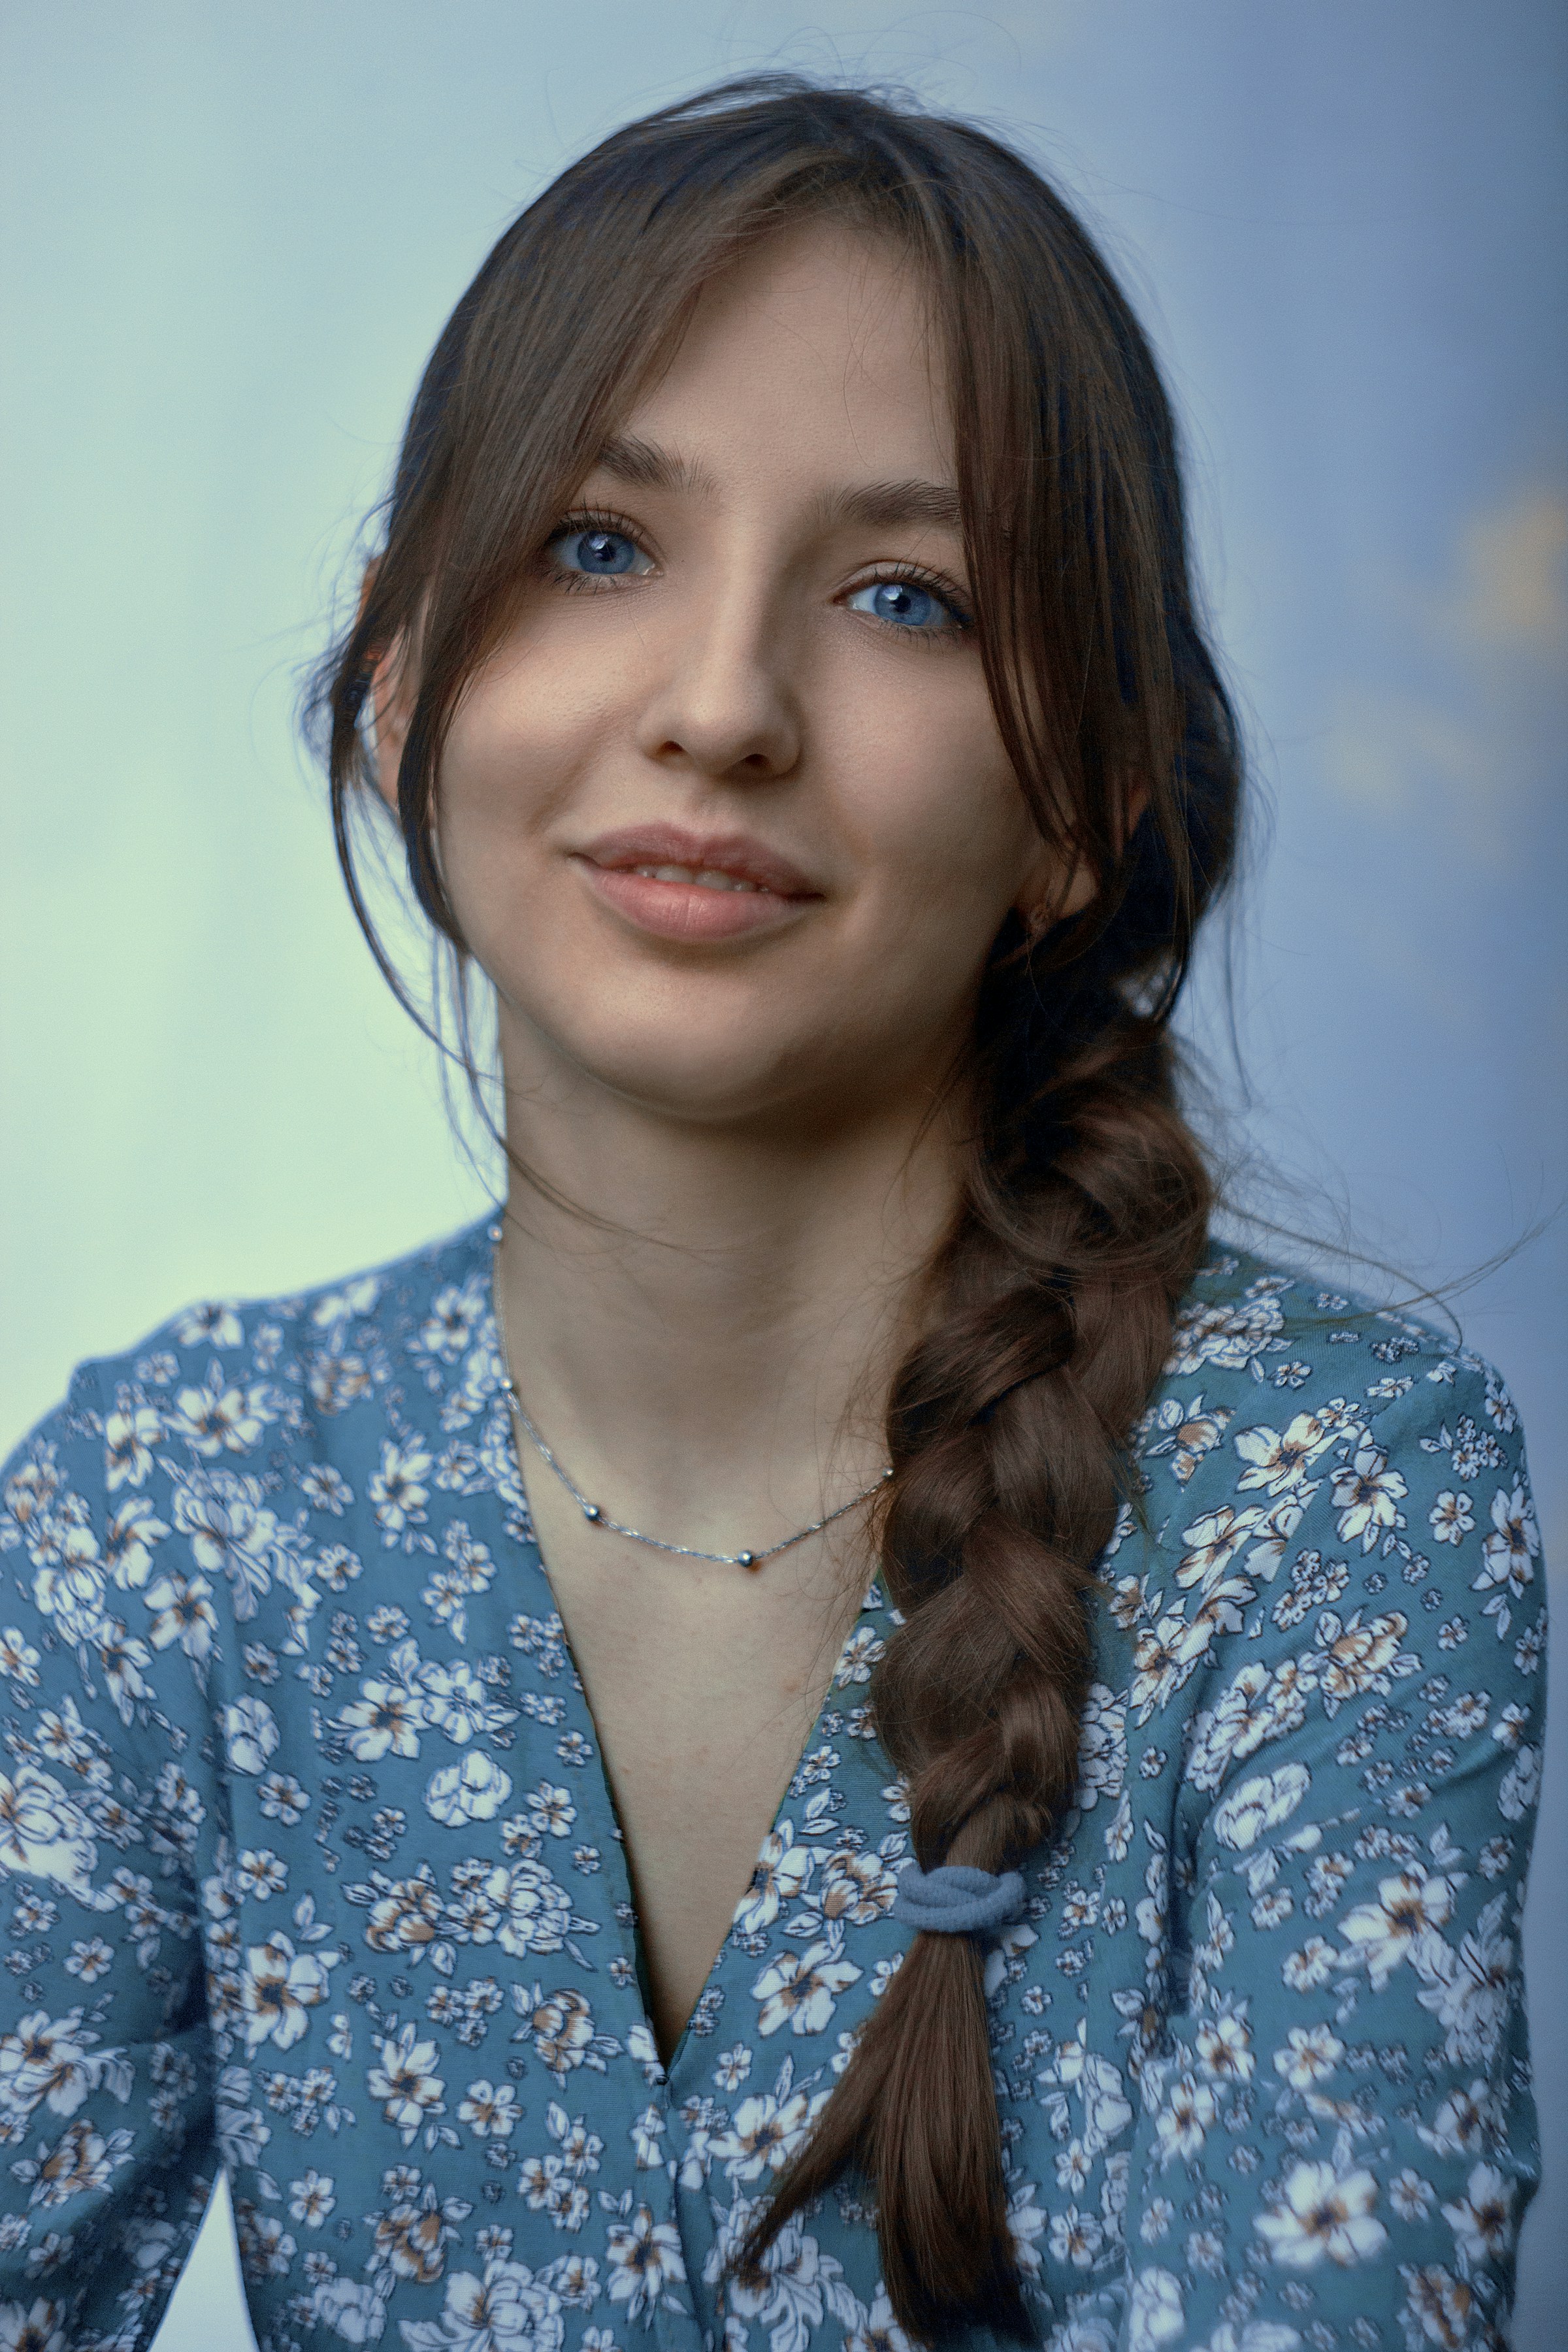 Una joven con una camisa abotonada de flores azules y blancas | Fuente: Unsplash